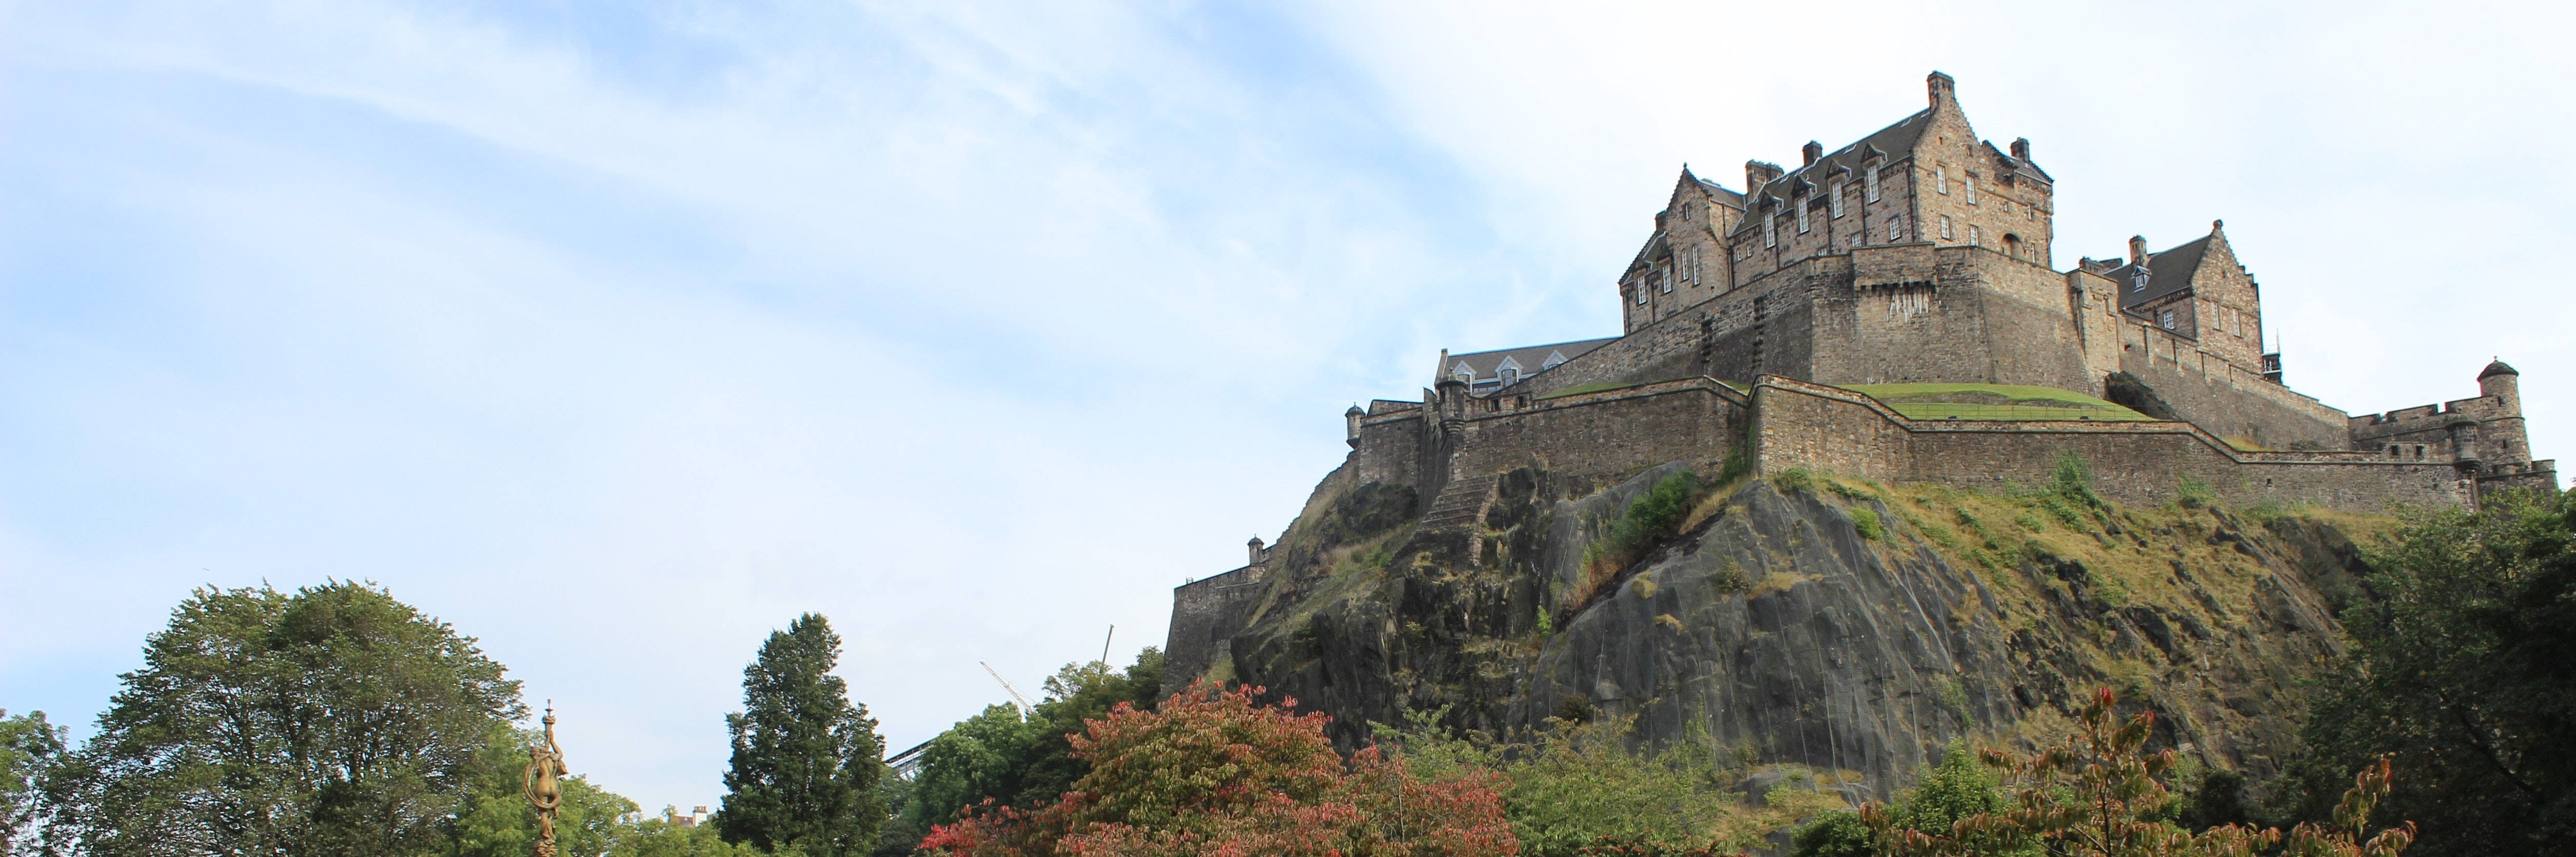 Edinburgh Castle In The Daytime Wallpaper